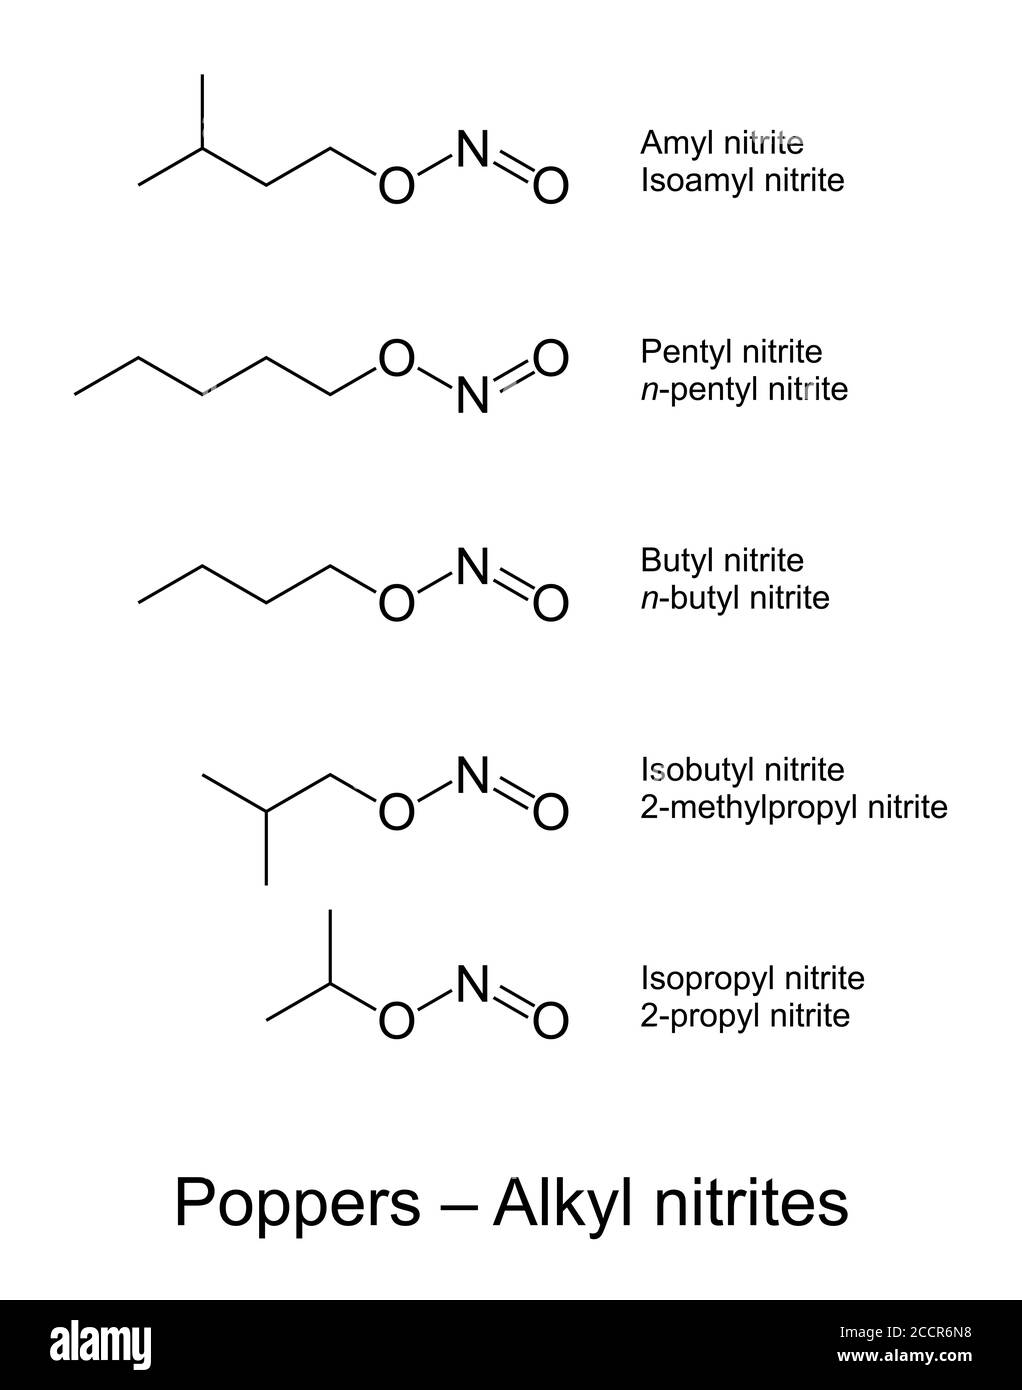 Poppers, Alkylnitriten chemische Strukturen. Slang Begriff für chemische Verbindungen, vor allem in der Homosexuell Szene als Freizeitdrogen verwendet. Stockfoto